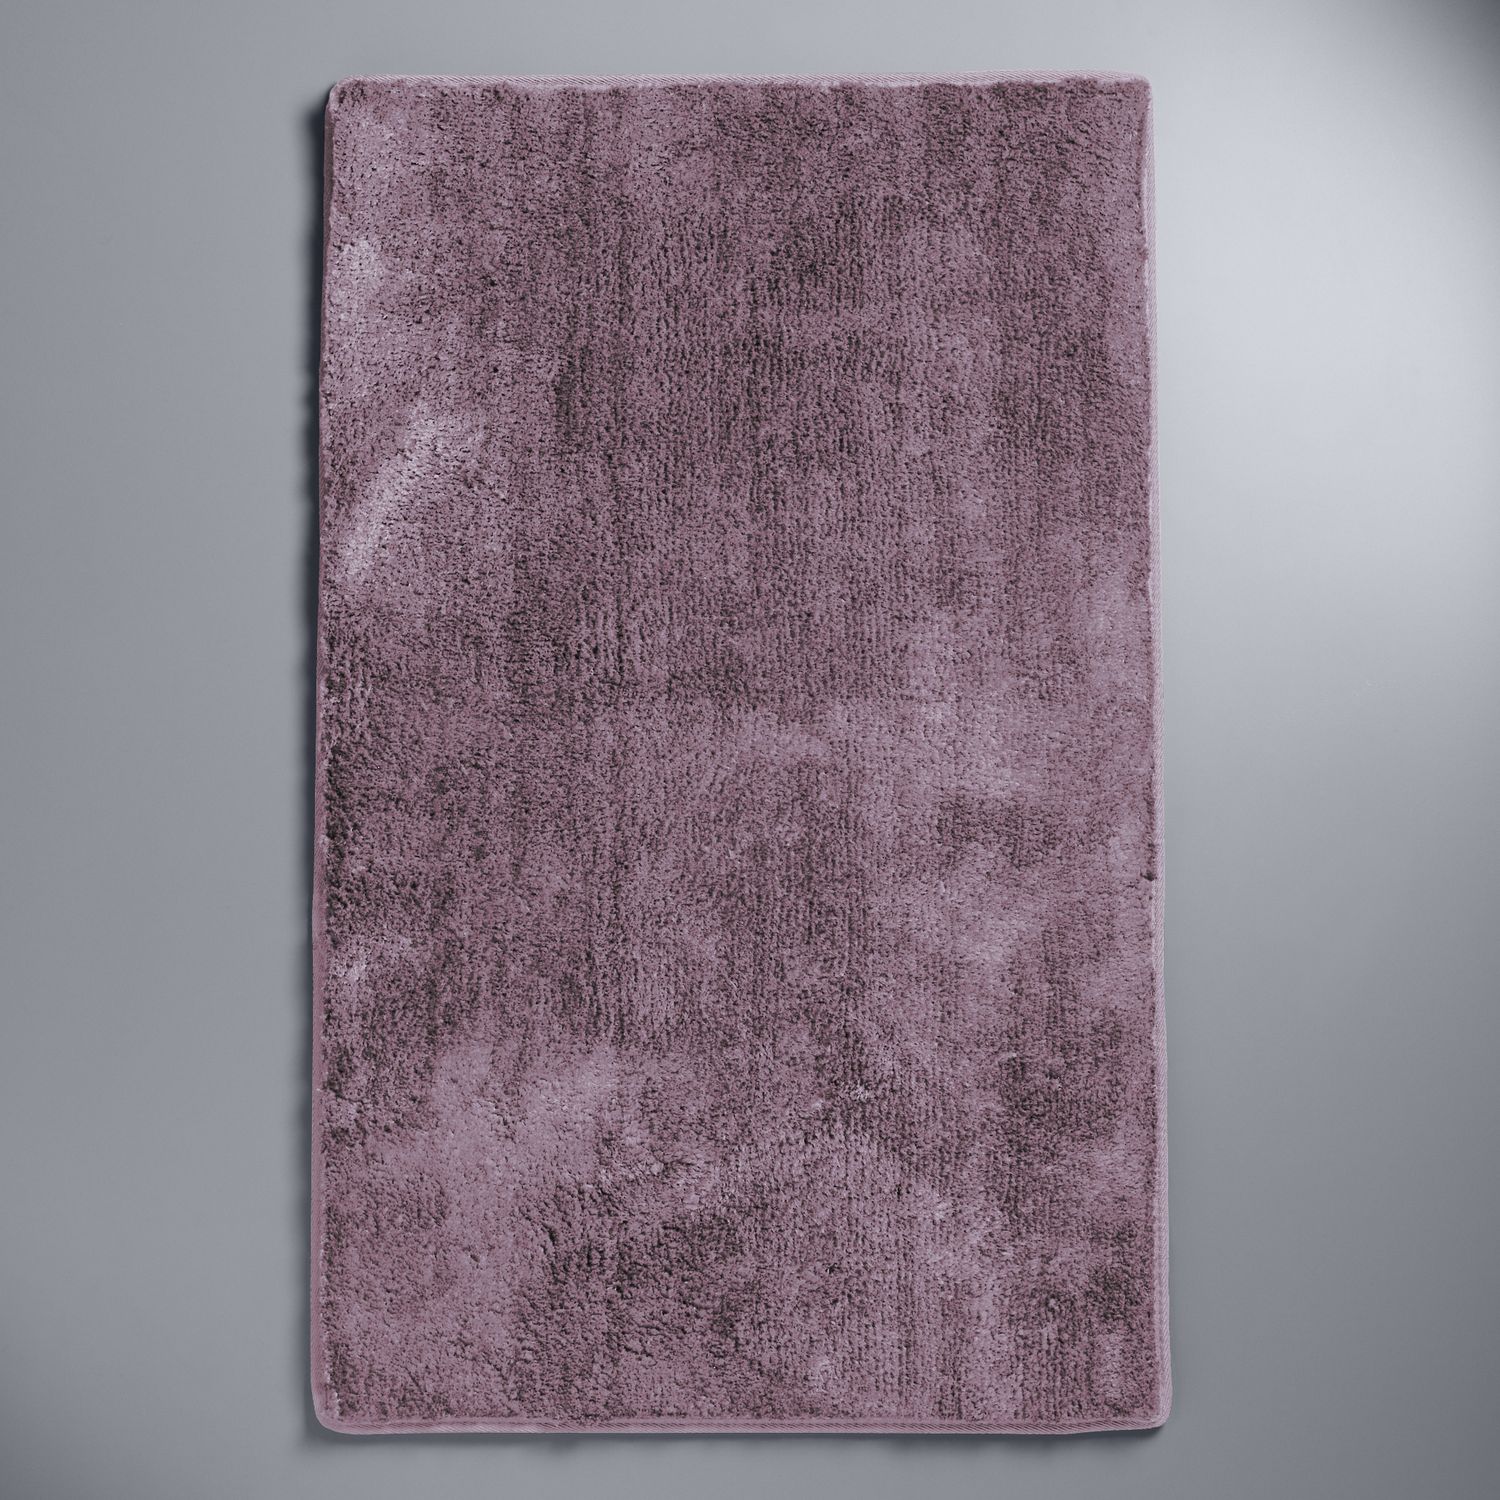 purple bath mat